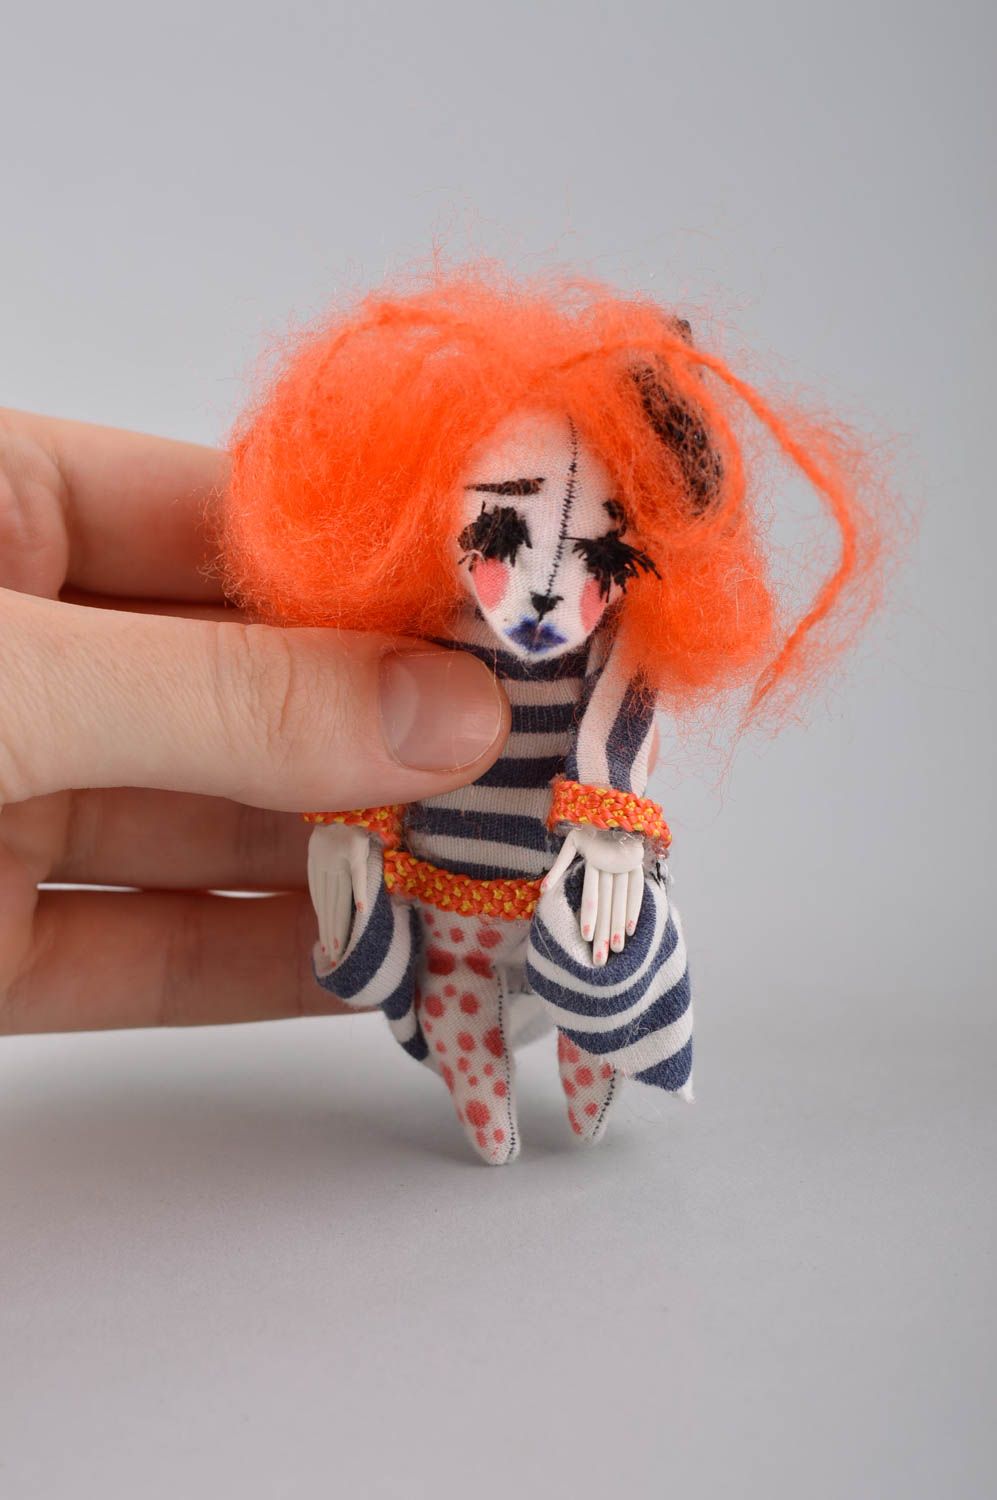 Авторская кукла игрушка ручной работы дизайнерская кукла тектсильная необычная фото 4